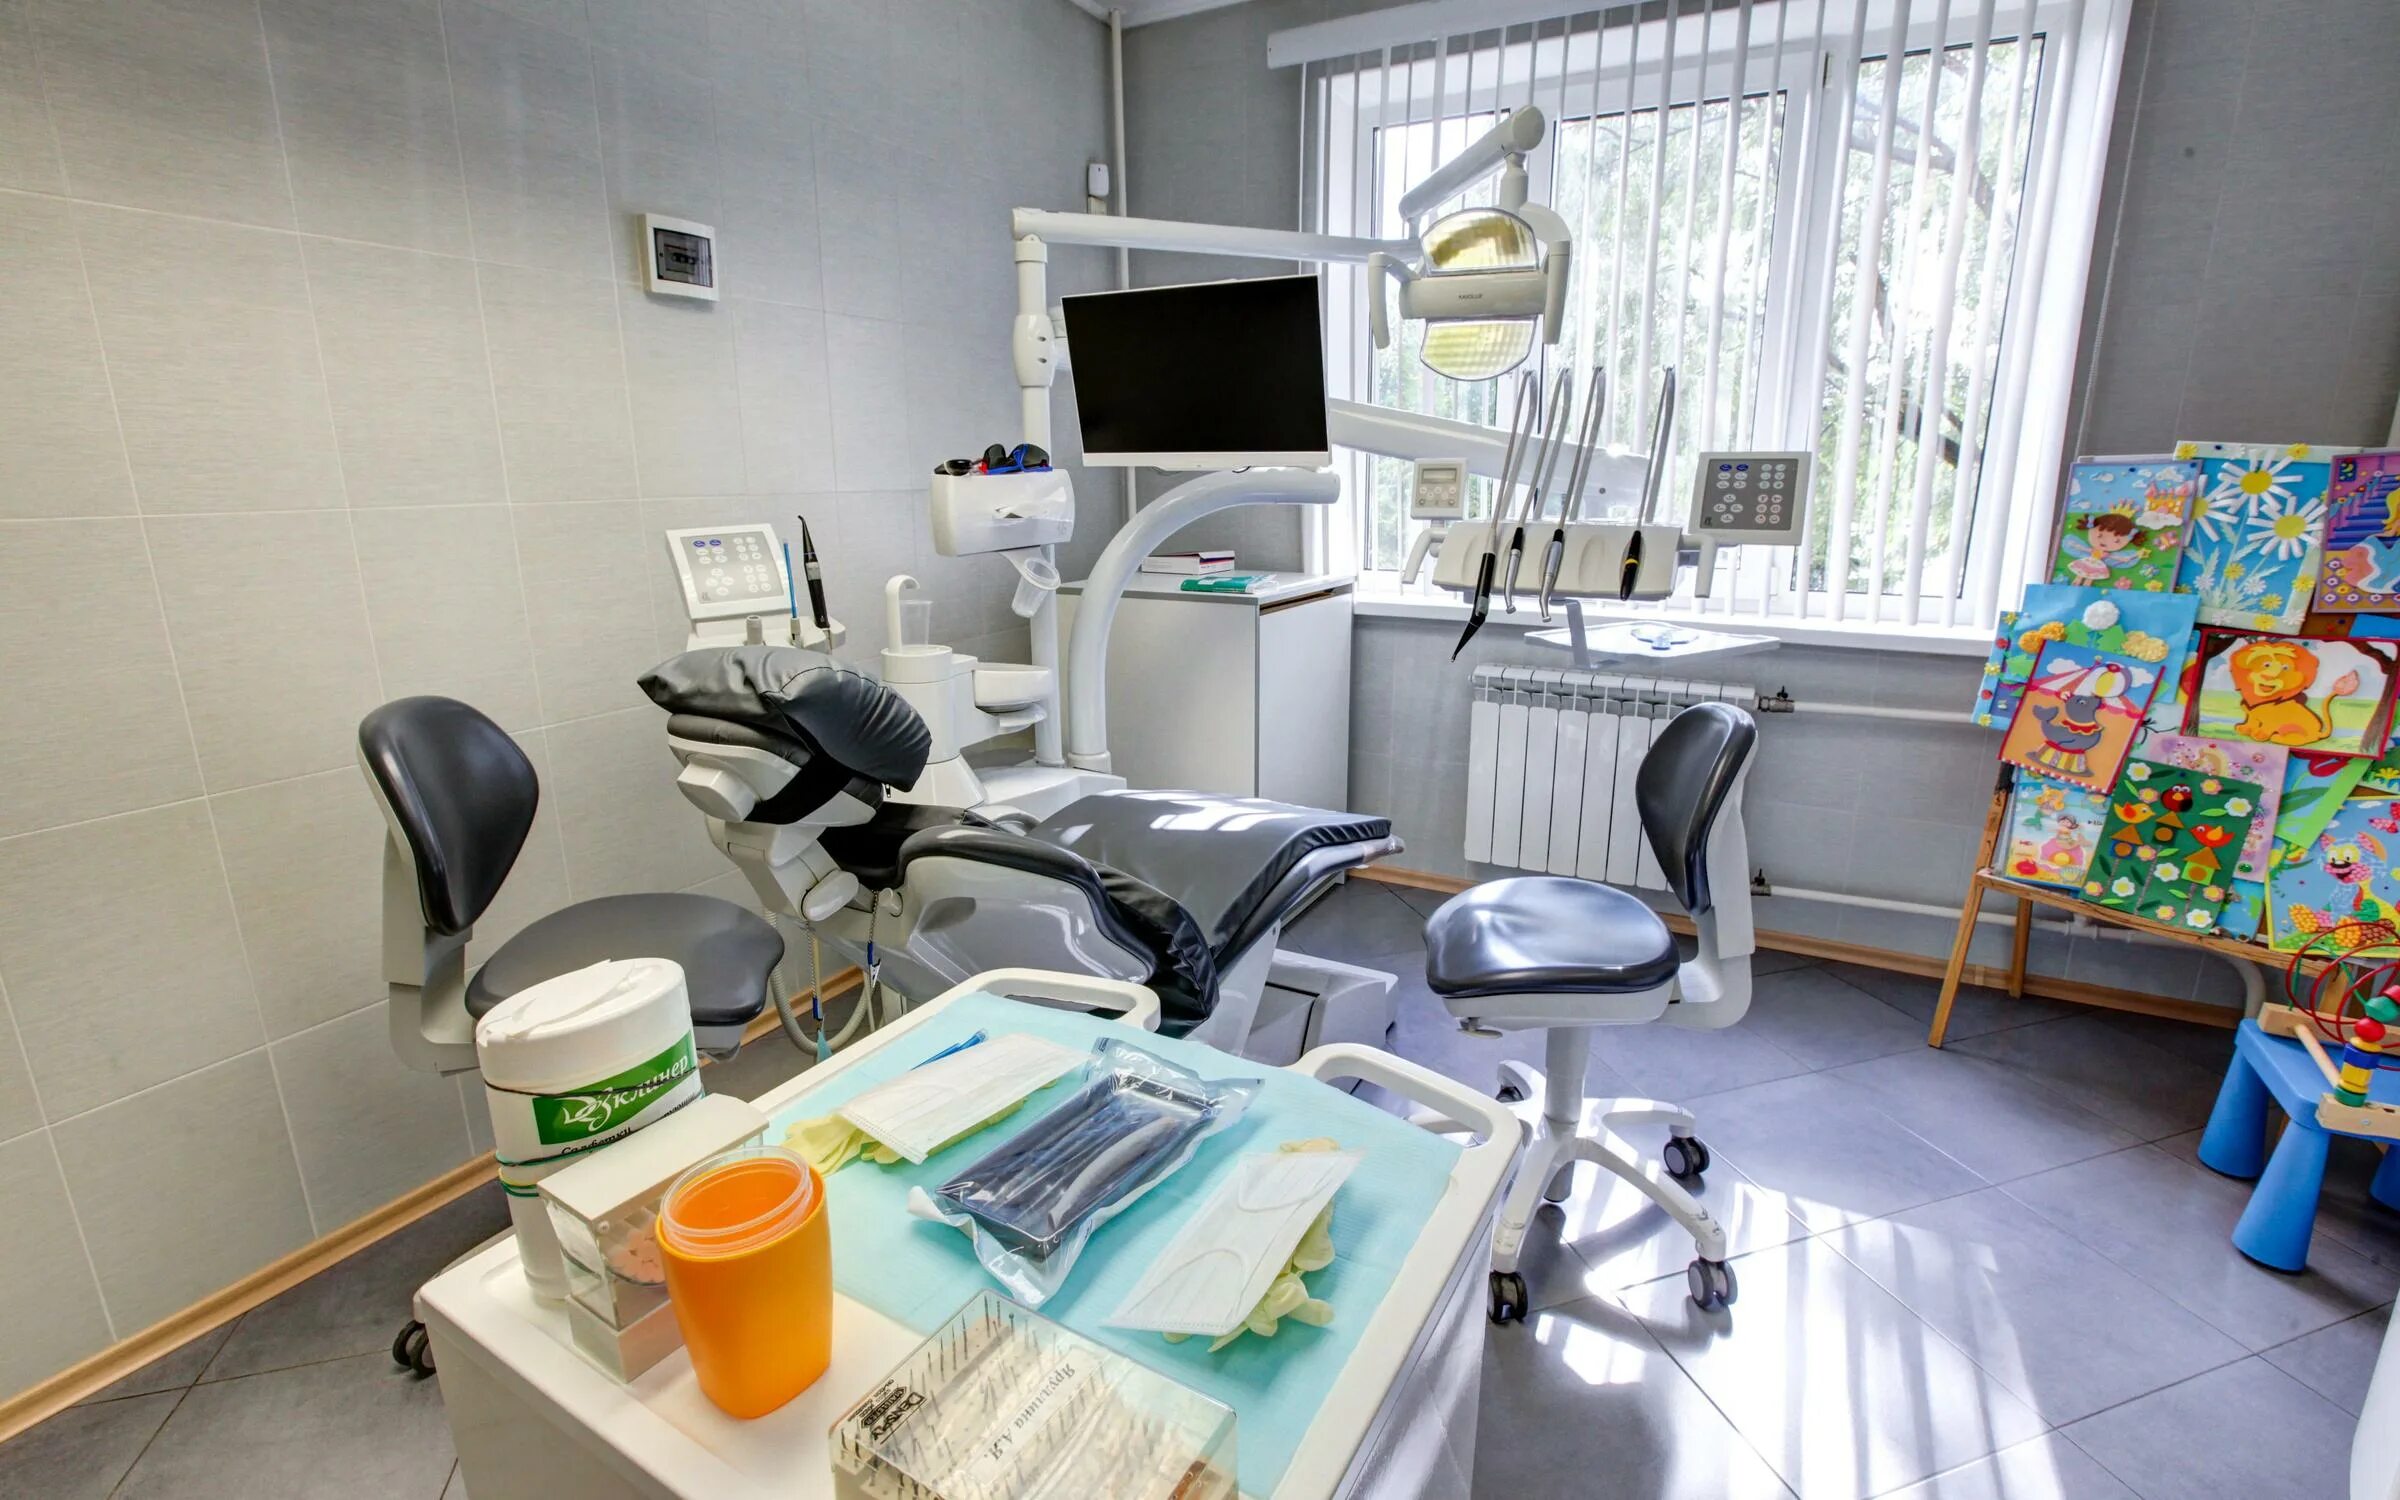 Стоматология Дент сервис в Ясенево. Вильнюсская 13 стоматология Дент сервис. Дента сервис стоматология. Стоматология Ясенево. Стоматология на ясеневой